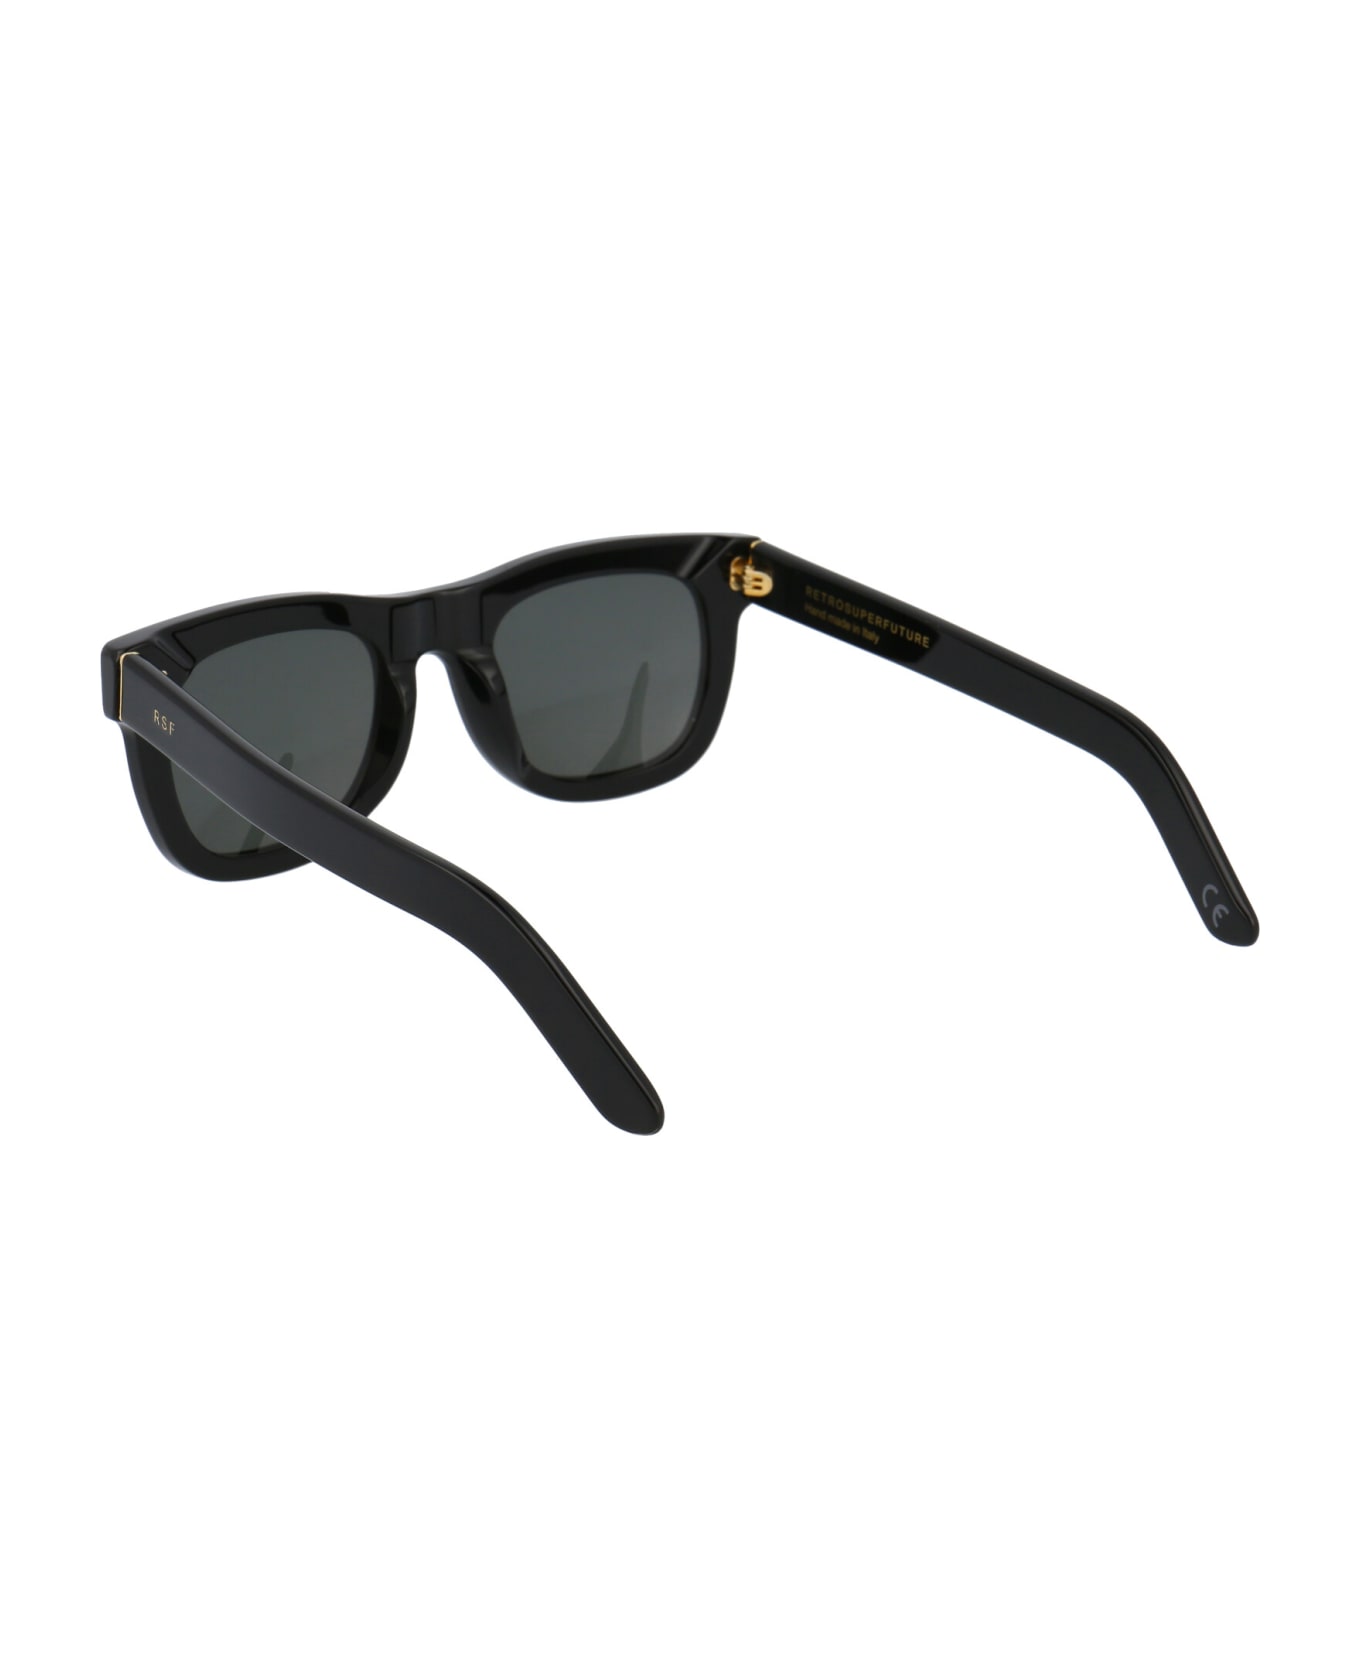 RETROSUPERFUTURE Ciccio Sunglasses - BLACK